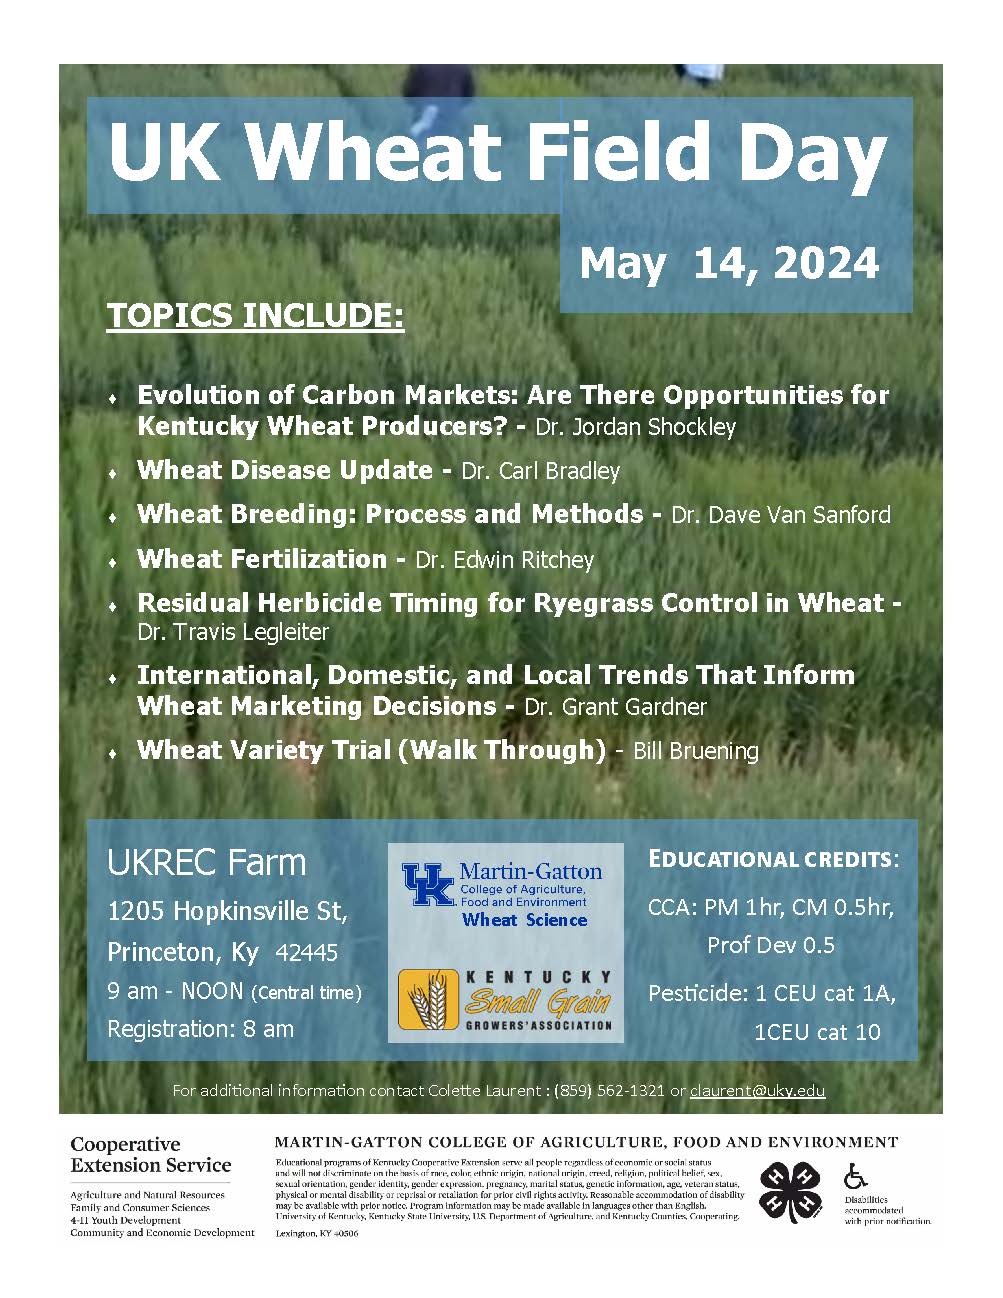 UK Wheat Field Day 2024 Flyer